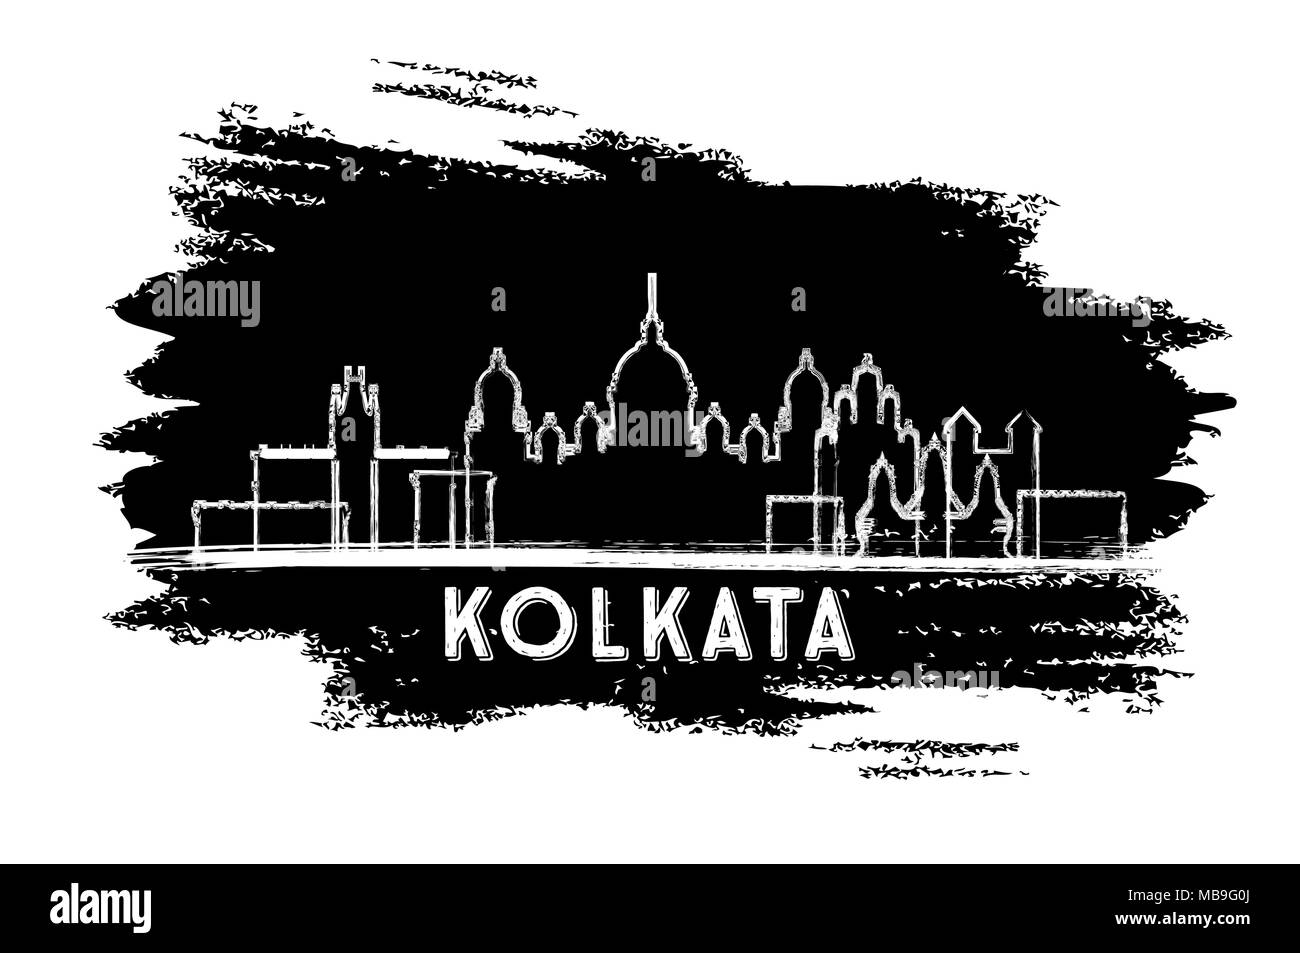 Kolkata Inde Ville Silhouette. Croquis dessinés à la main. Les voyages d'affaires et tourisme Concept avec l'architecture historique. Vector Illustration. Illustration de Vecteur